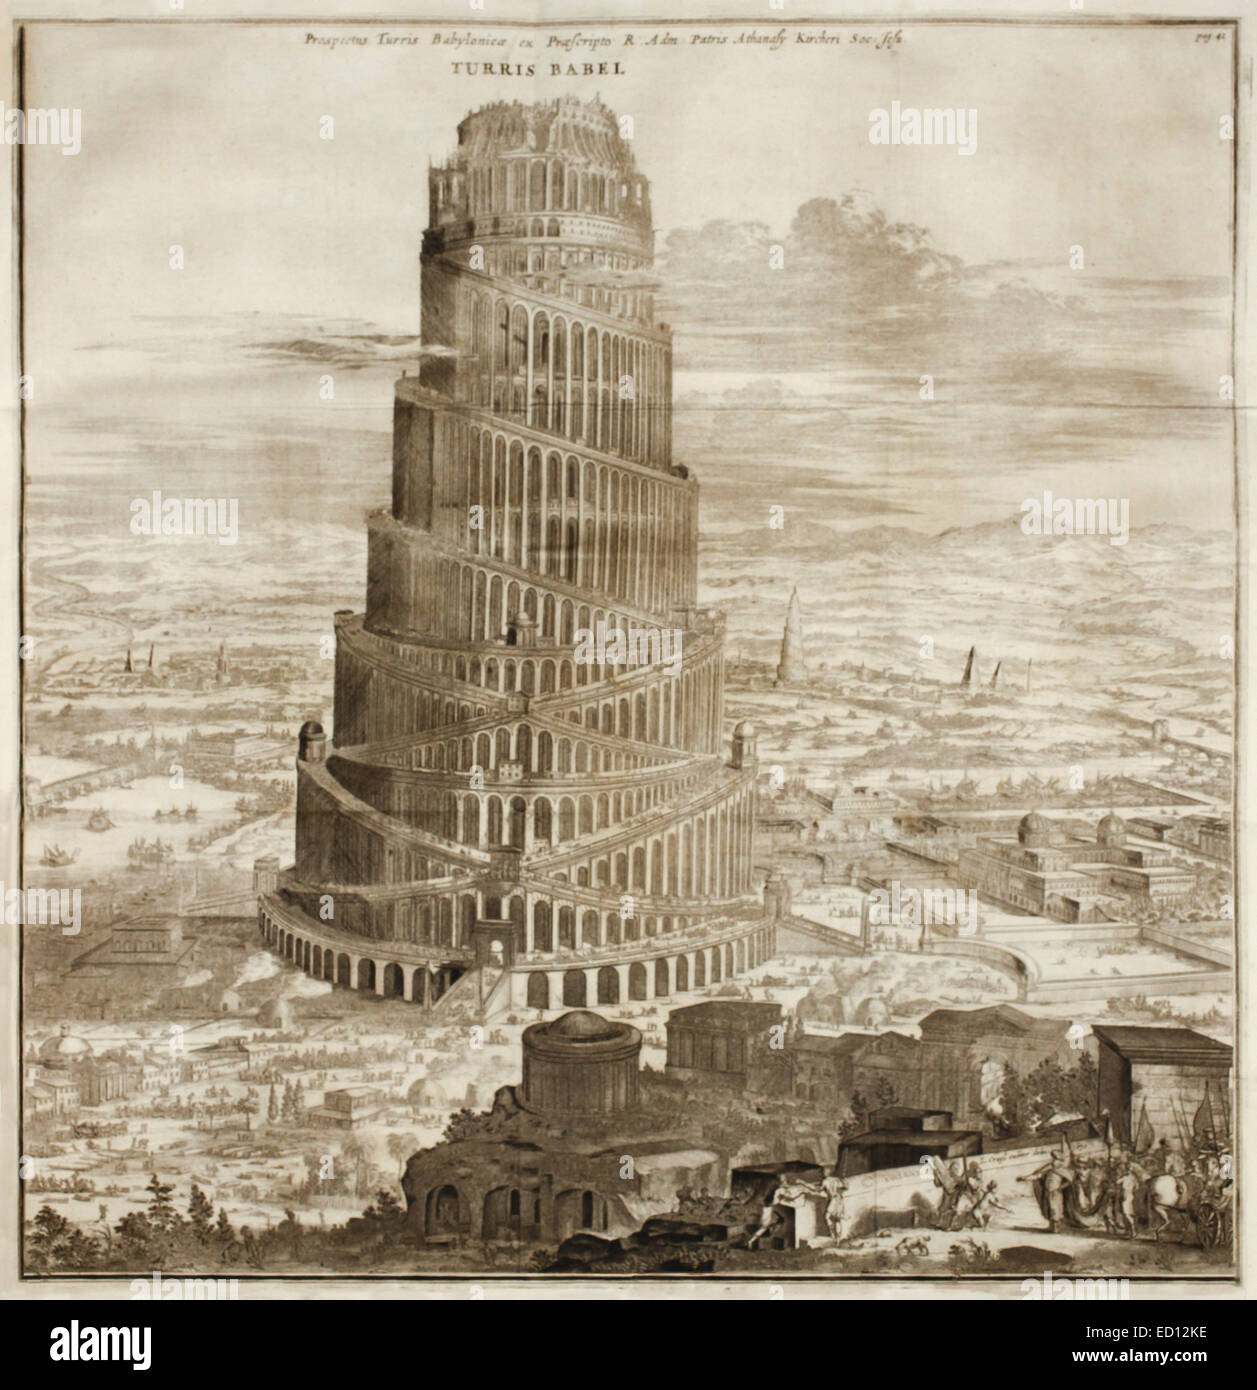 Der Turm zu Babel, 17. Jahrhundert Abbildung. Siehe Beschreibung für mehr Informationen. Stockfoto